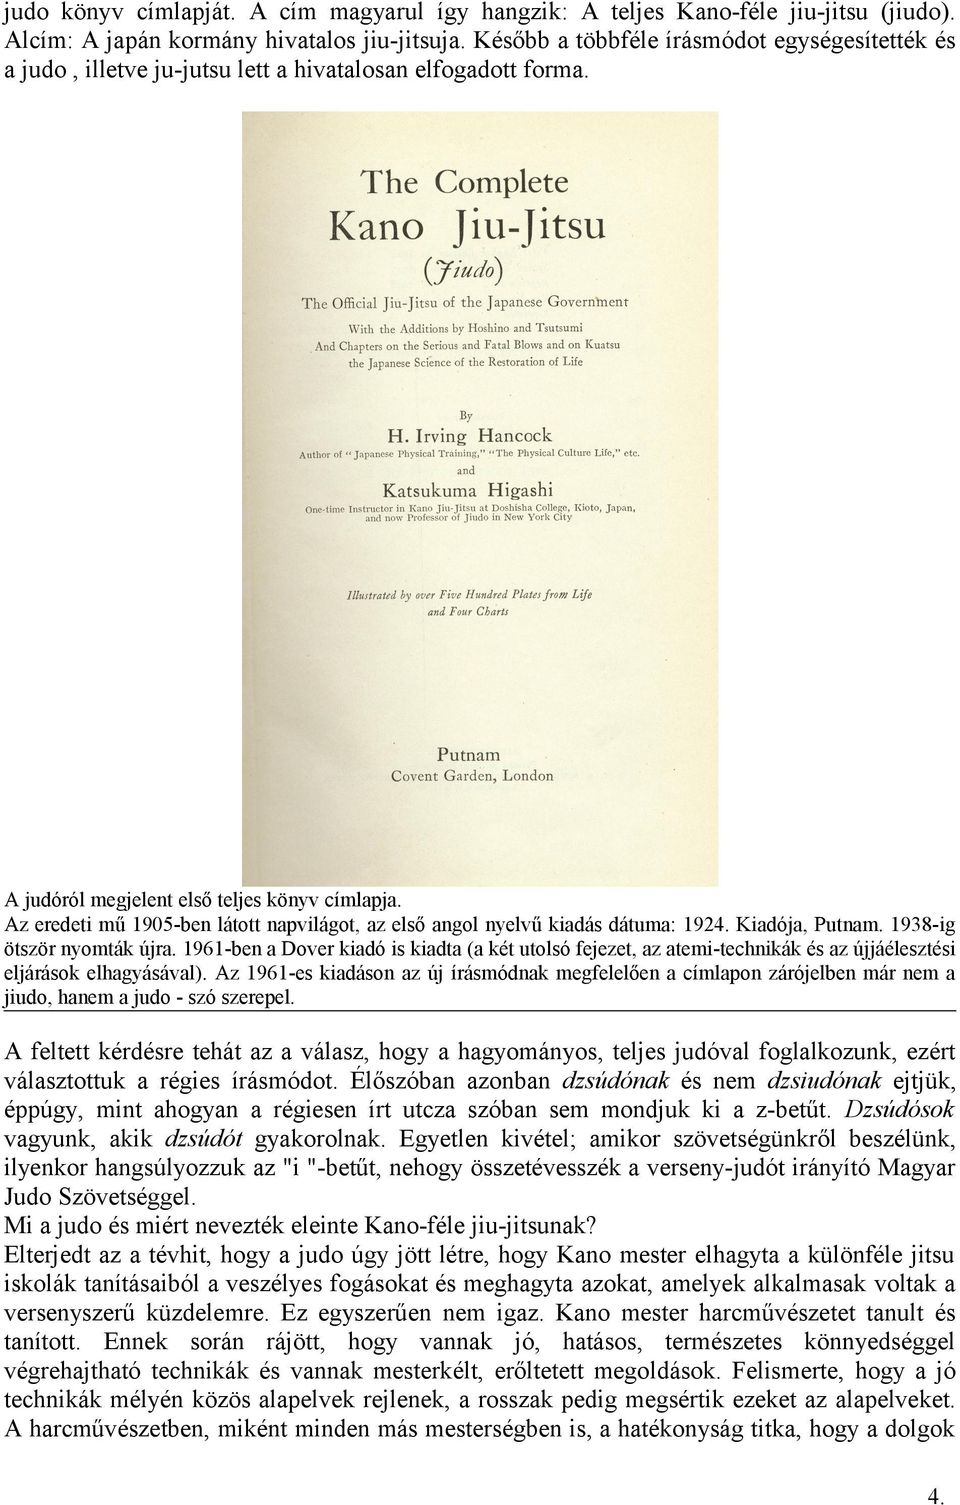 Az eredeti mű 1905-ben látott napvilágot, az első angol nyelvű kiadás dátuma: 1924. Kiadója, Putnam. 1938-ig ötször nyomták újra.